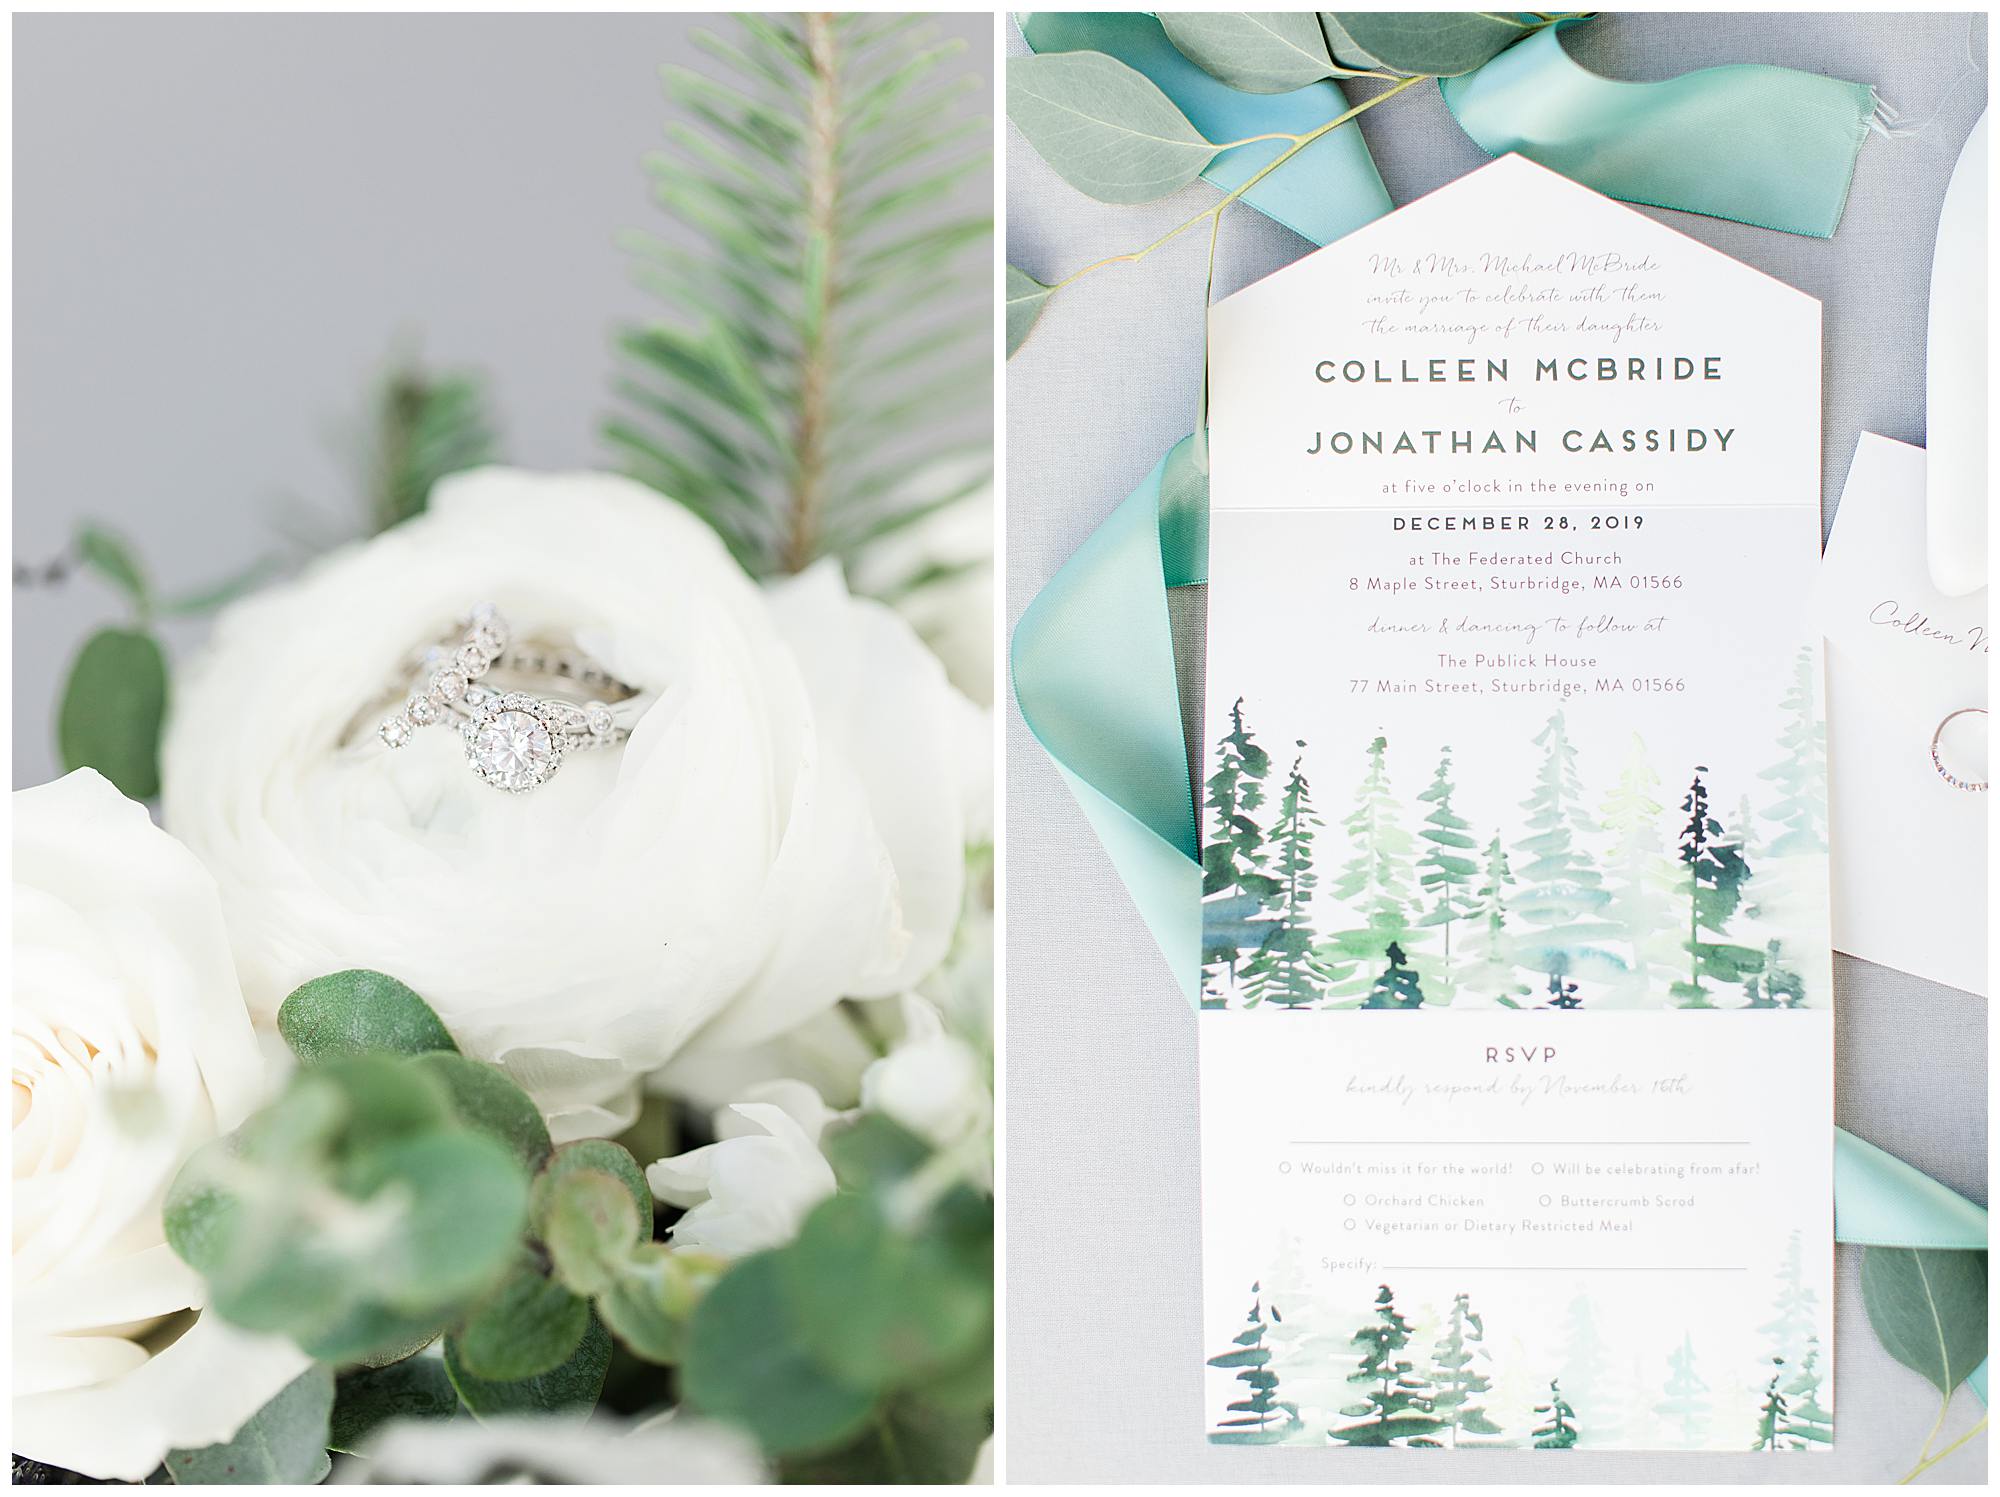 Colleen + Jonathan | Winter Wedding